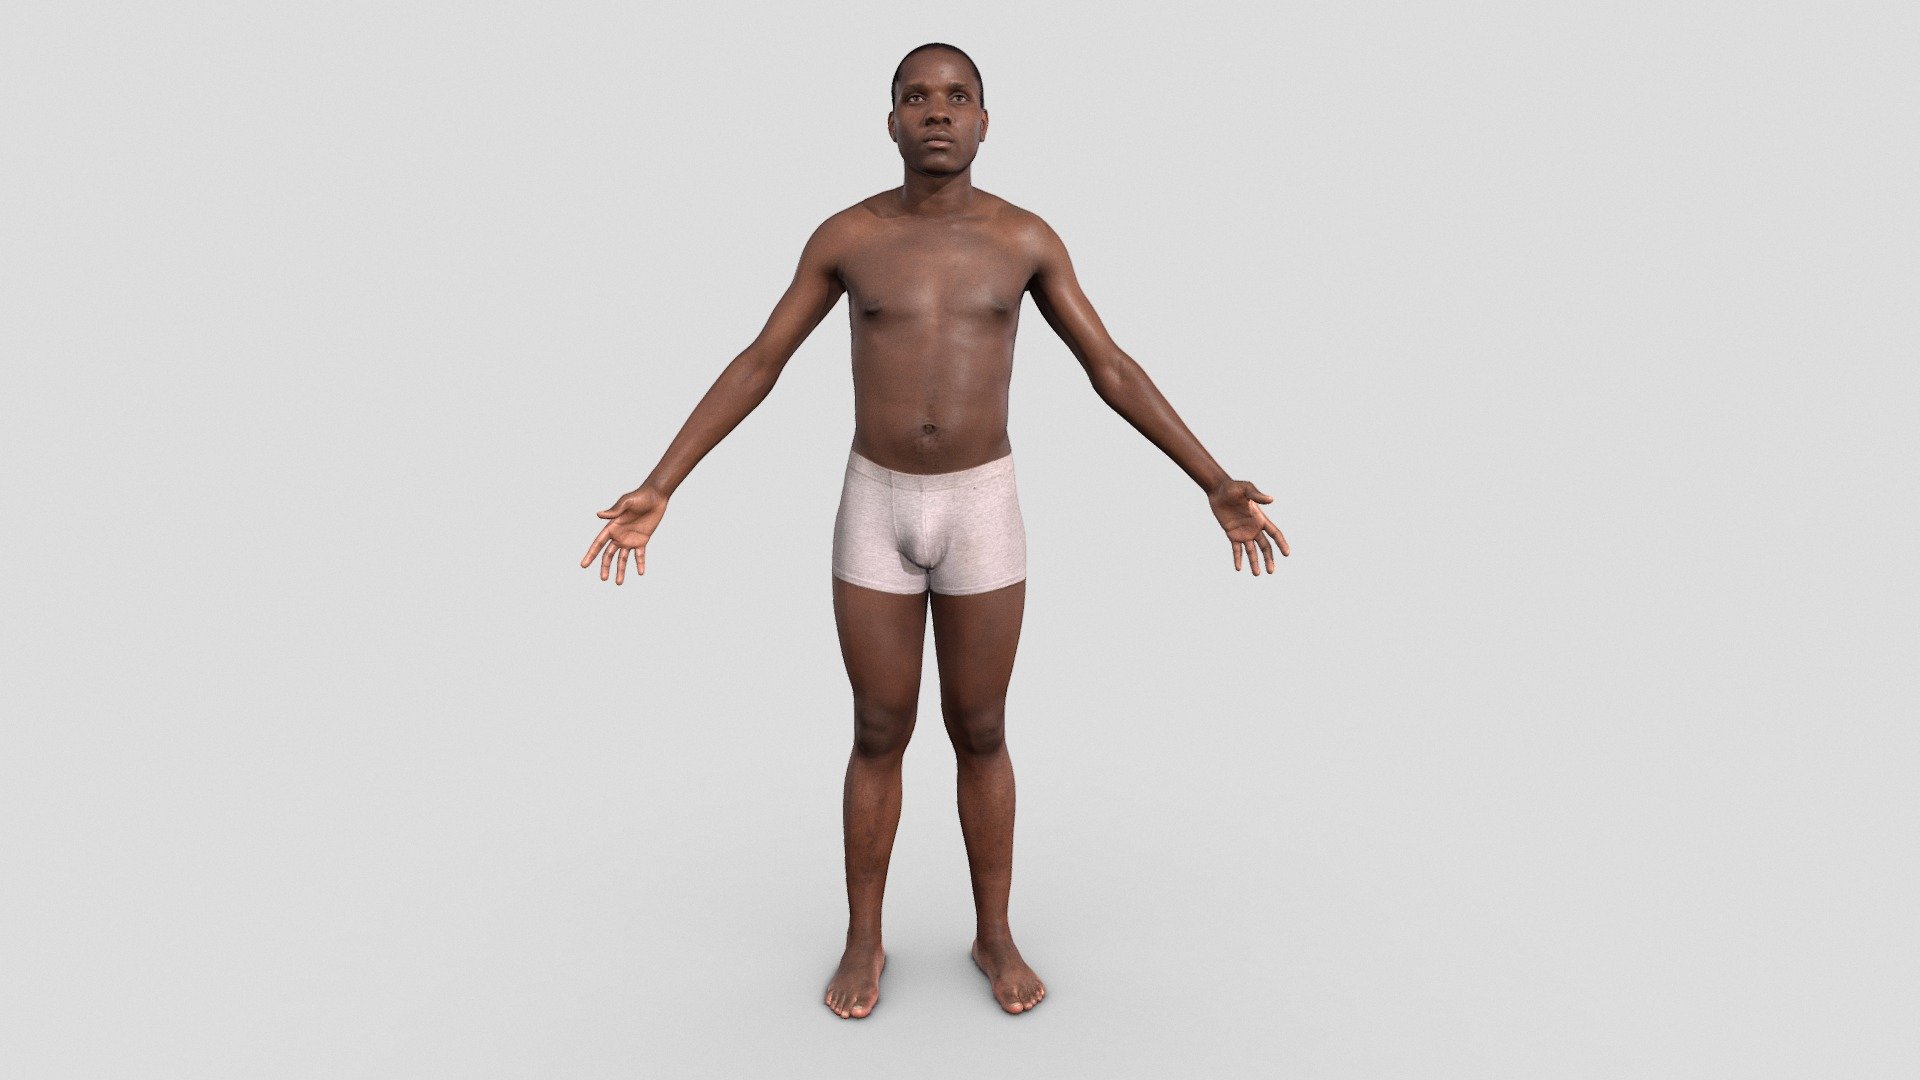 Underwear 3D models - Sketchfab